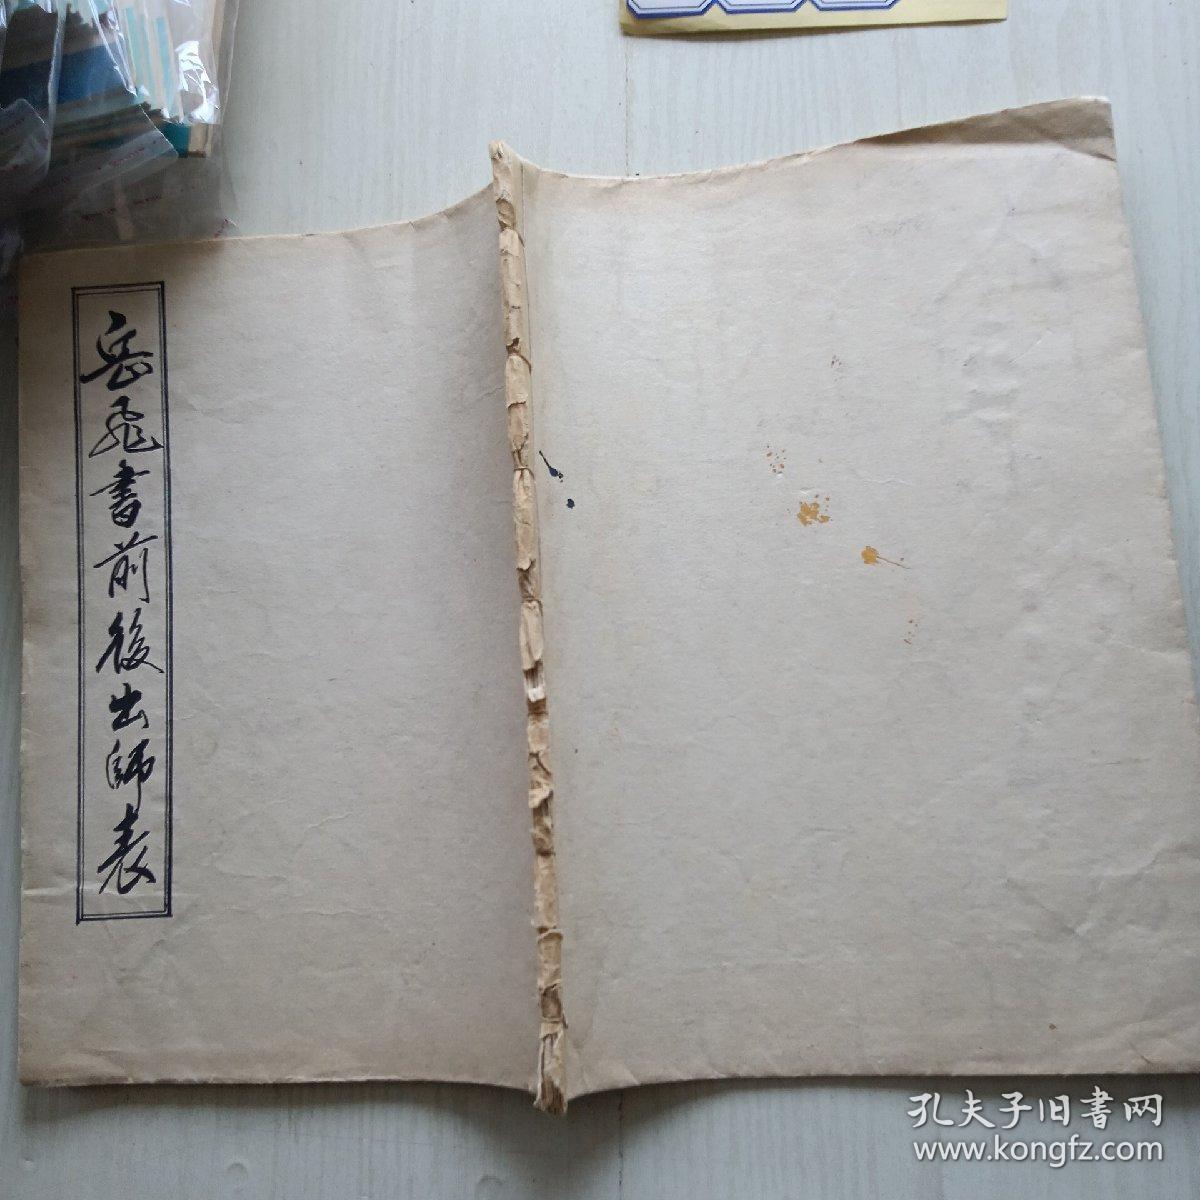 岳飞书前后出师表 赵鸿桐老师毛笔书法 写于1985年